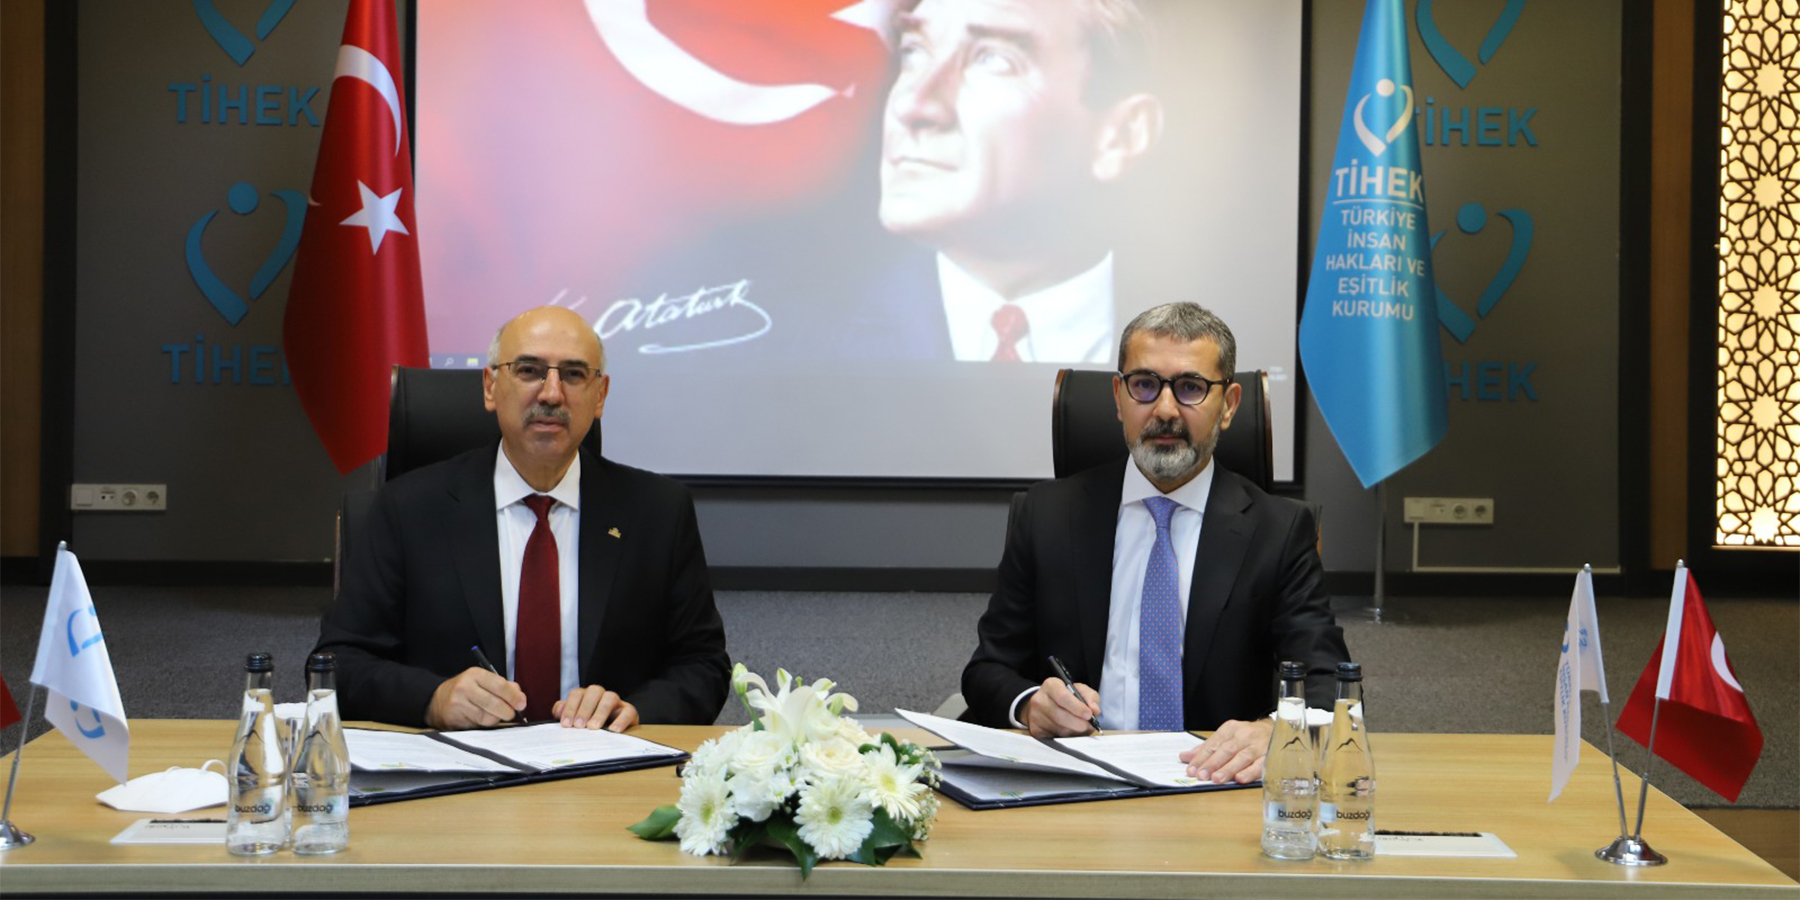 Kurumumuz ile İstanbul Üniversitesi Arasında Kurumsal İş Birliği Protokolü İmzalandı